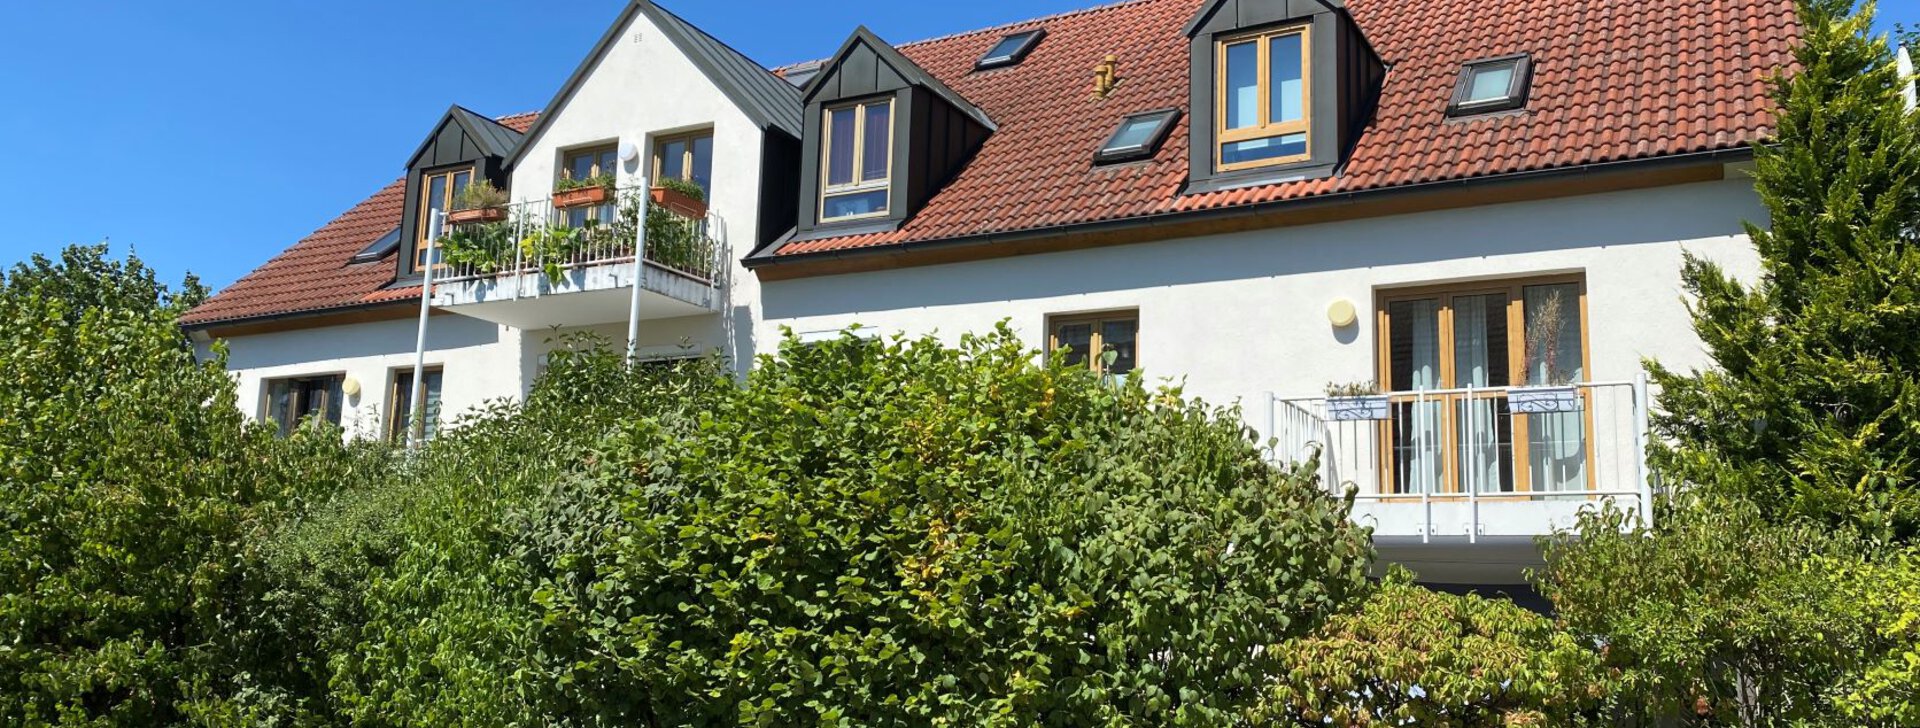 Außenansicht, 3-Zimmer-Wohnung in Hallbergmoos, Immobilie kaufen, Hallbergmoos | © HausBauHaus GmbH